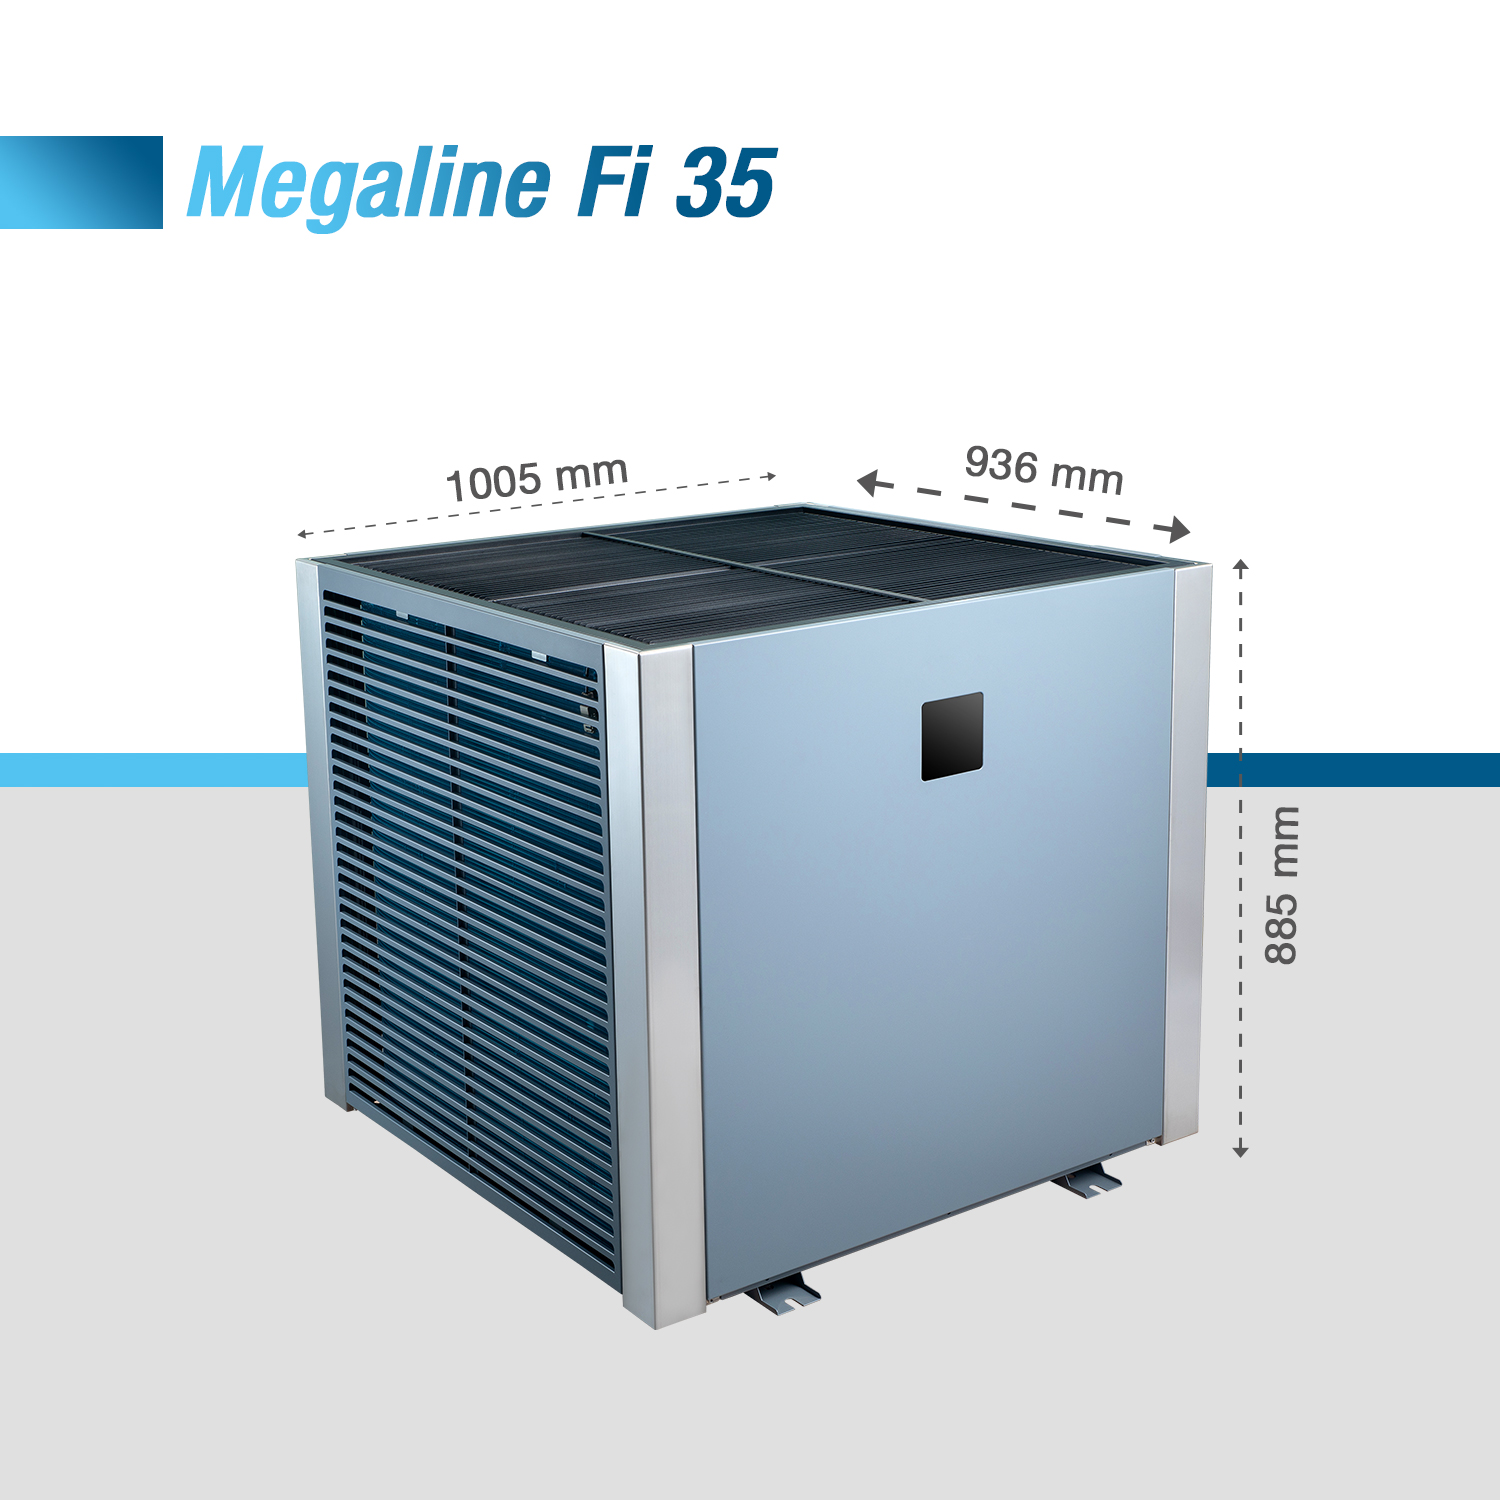 Megaline Fi 35